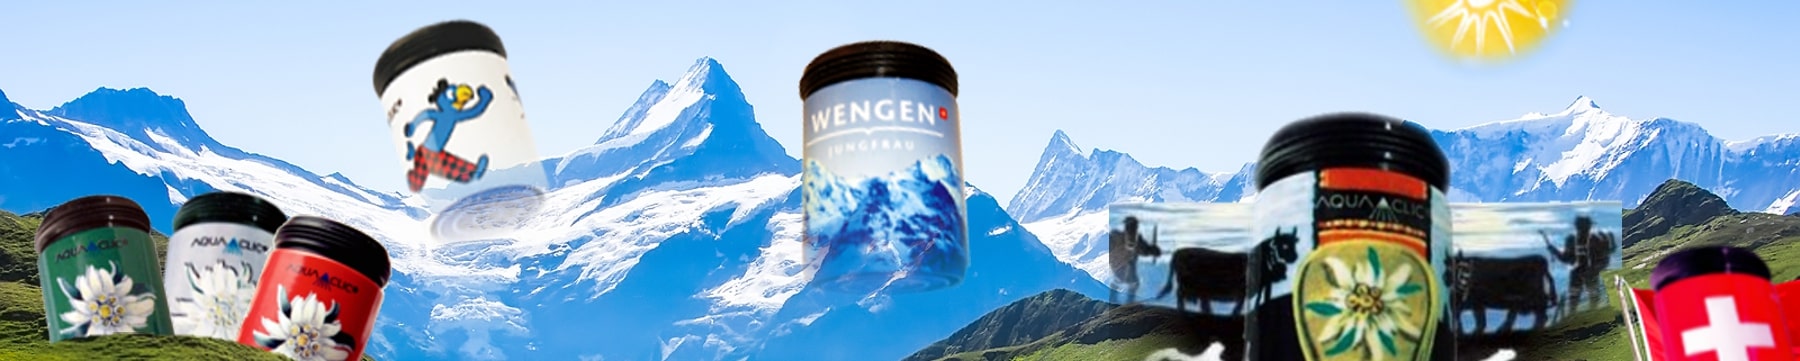 Schweizer Berge und bunte AquaClic-Strahlregler, z.B. Wenge